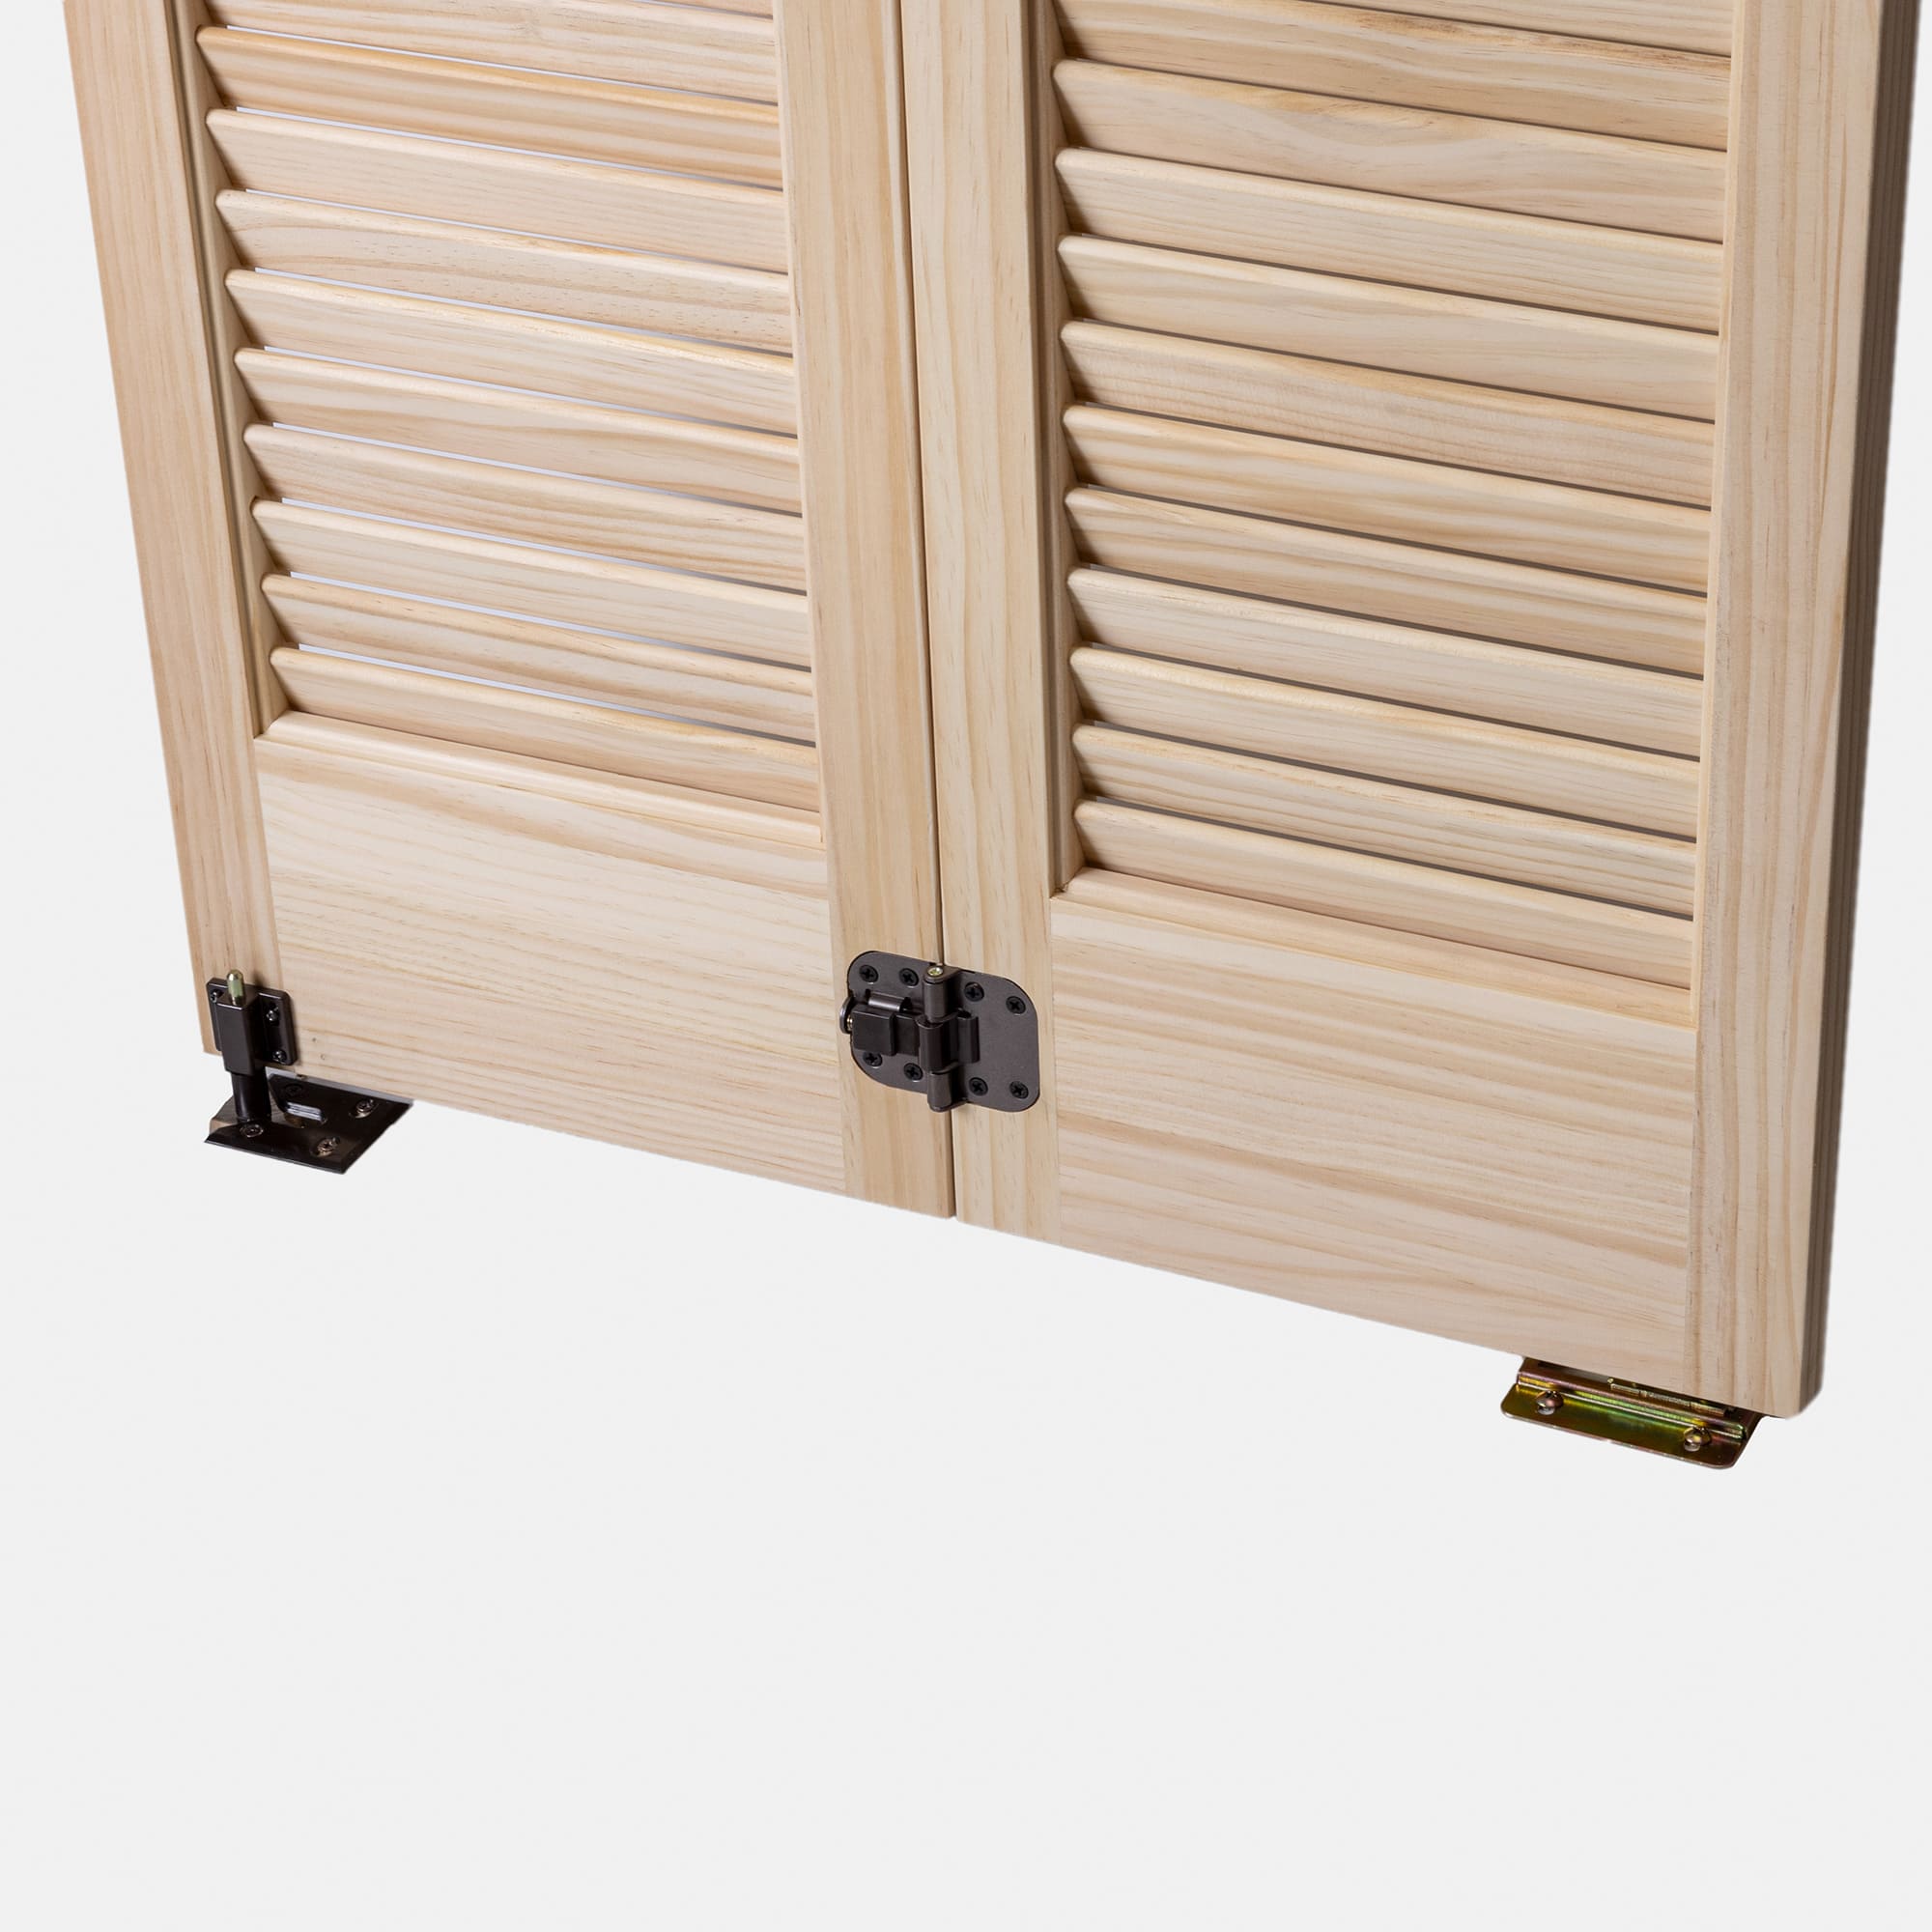 木製パインルーバー折れ戸 両開き 1209×2007 DW-DR011-03-G111 扉の裏側。振れ止め、ボトムピボット受け金具が付属します